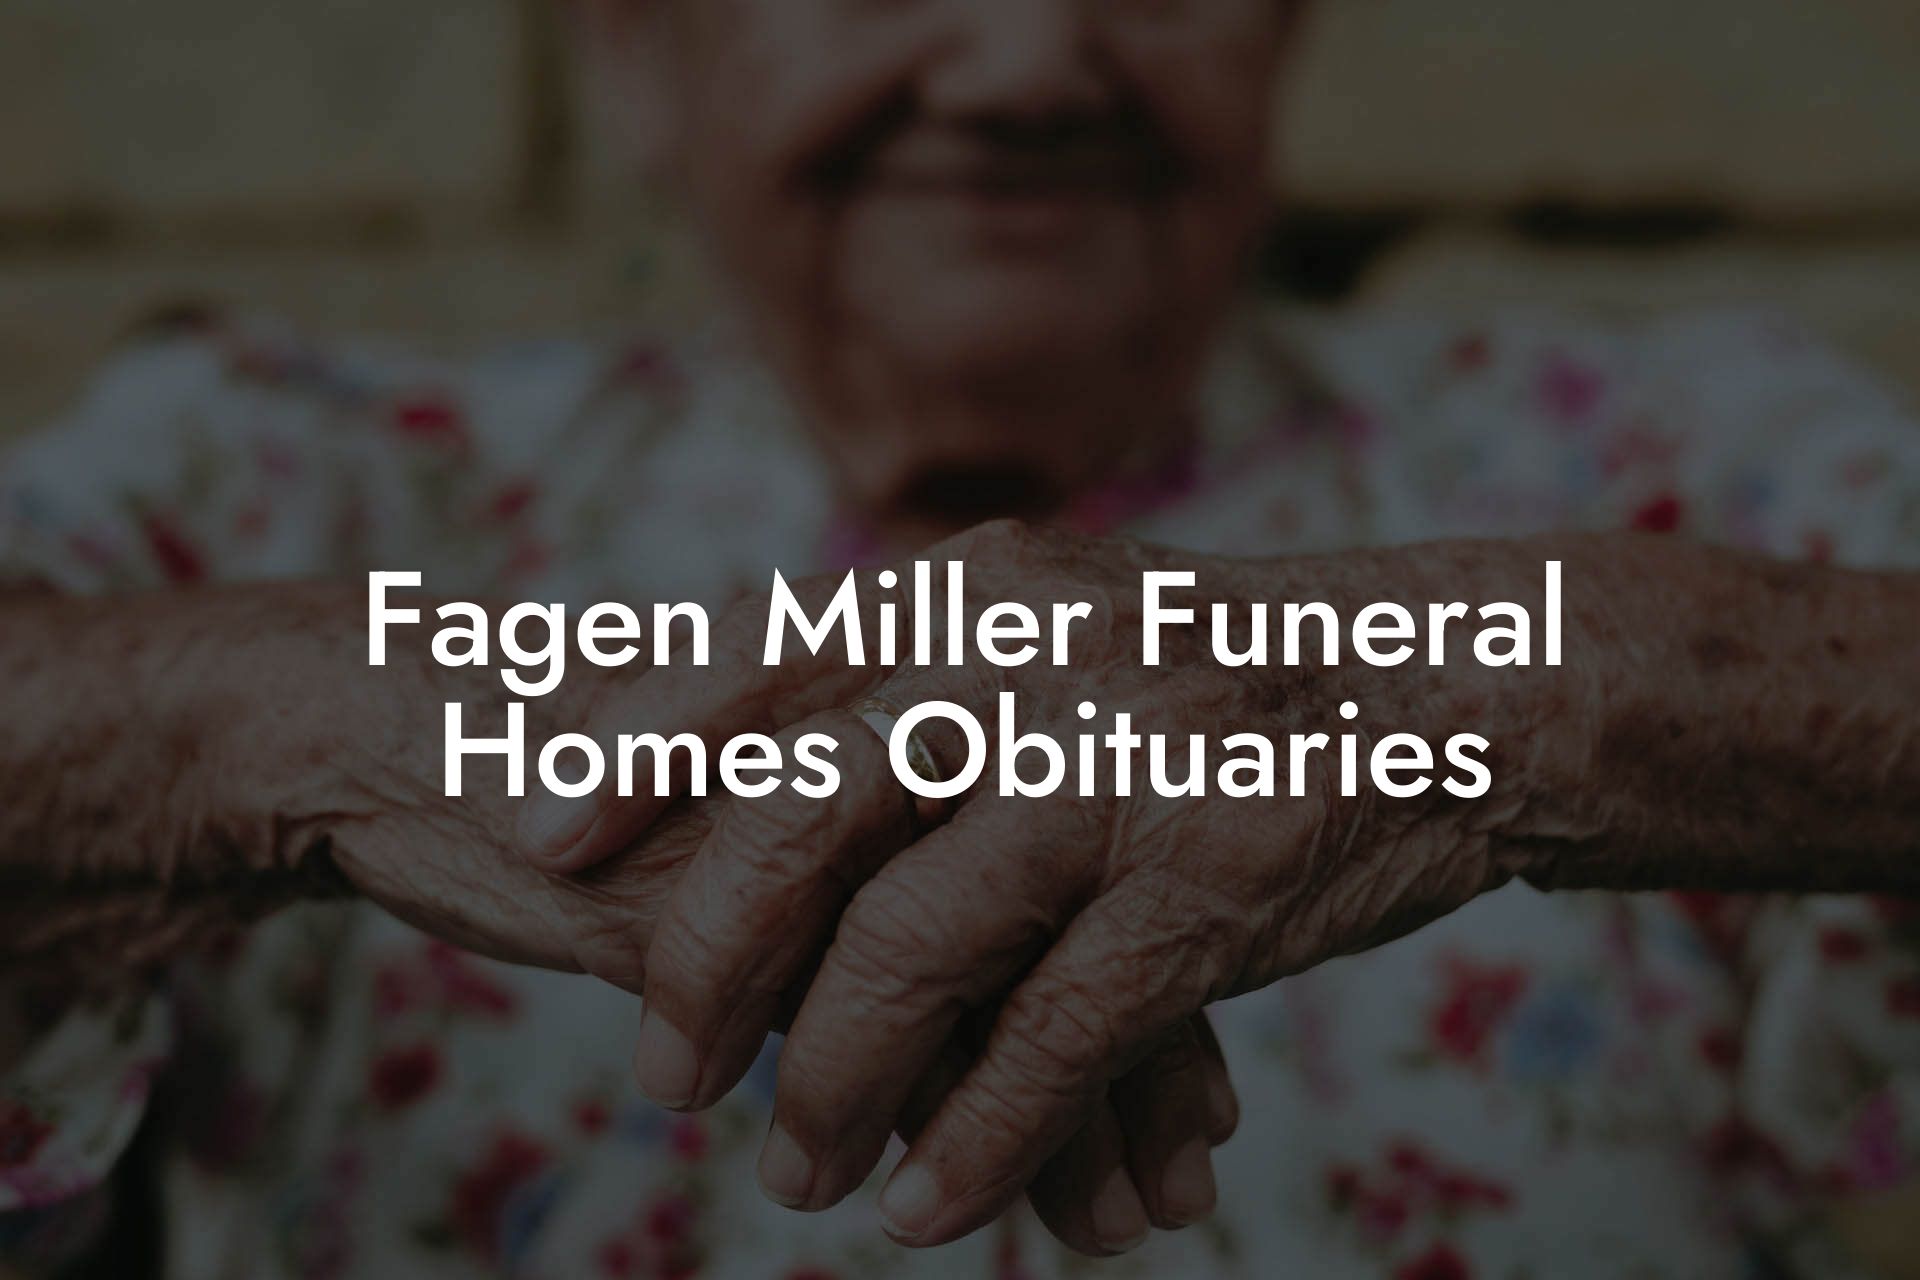 Fagen Miller Funeral Homes Obituaries